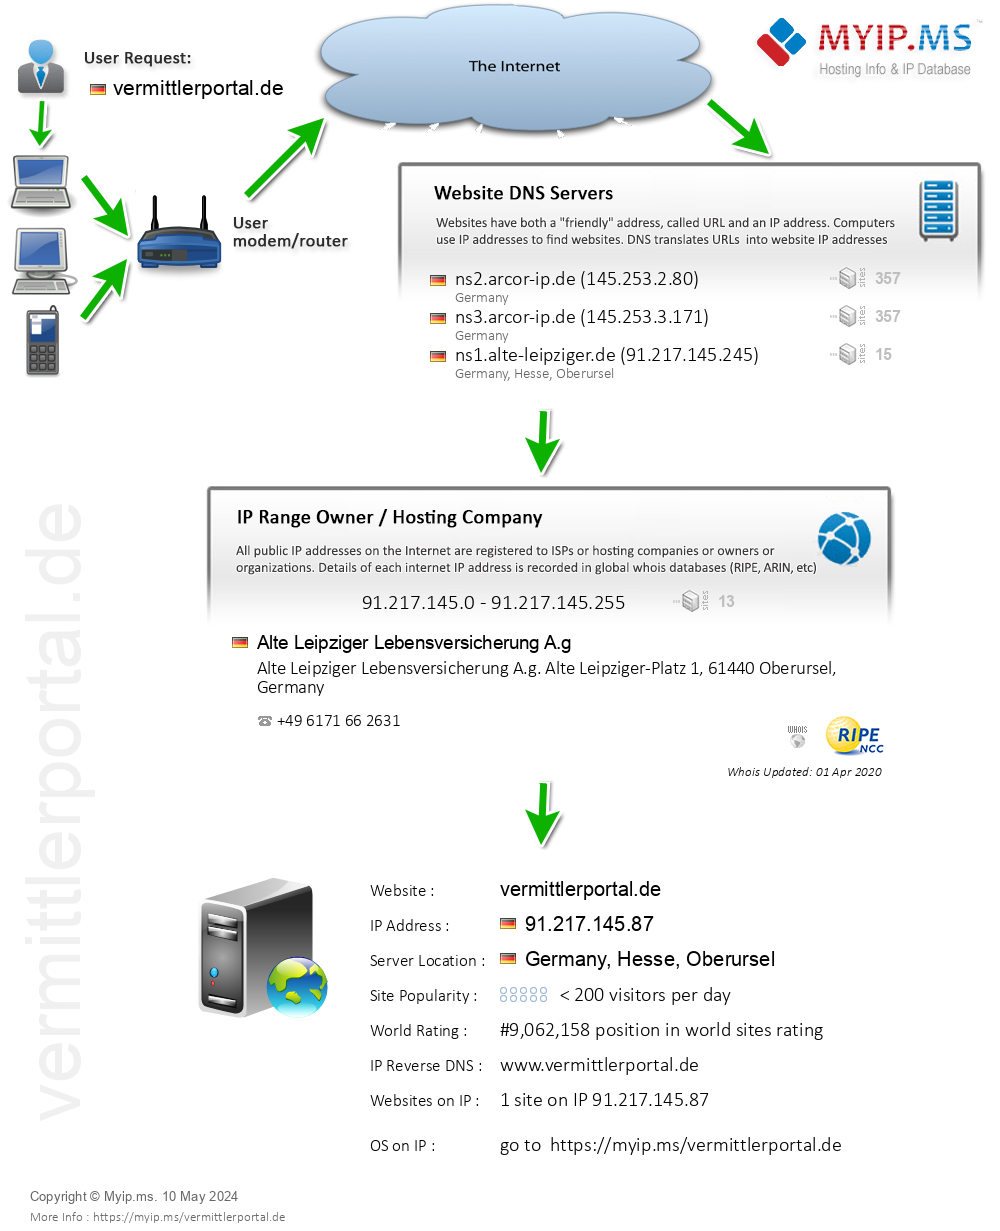 Vermittlerportal.de - Website Hosting Visual IP Diagram